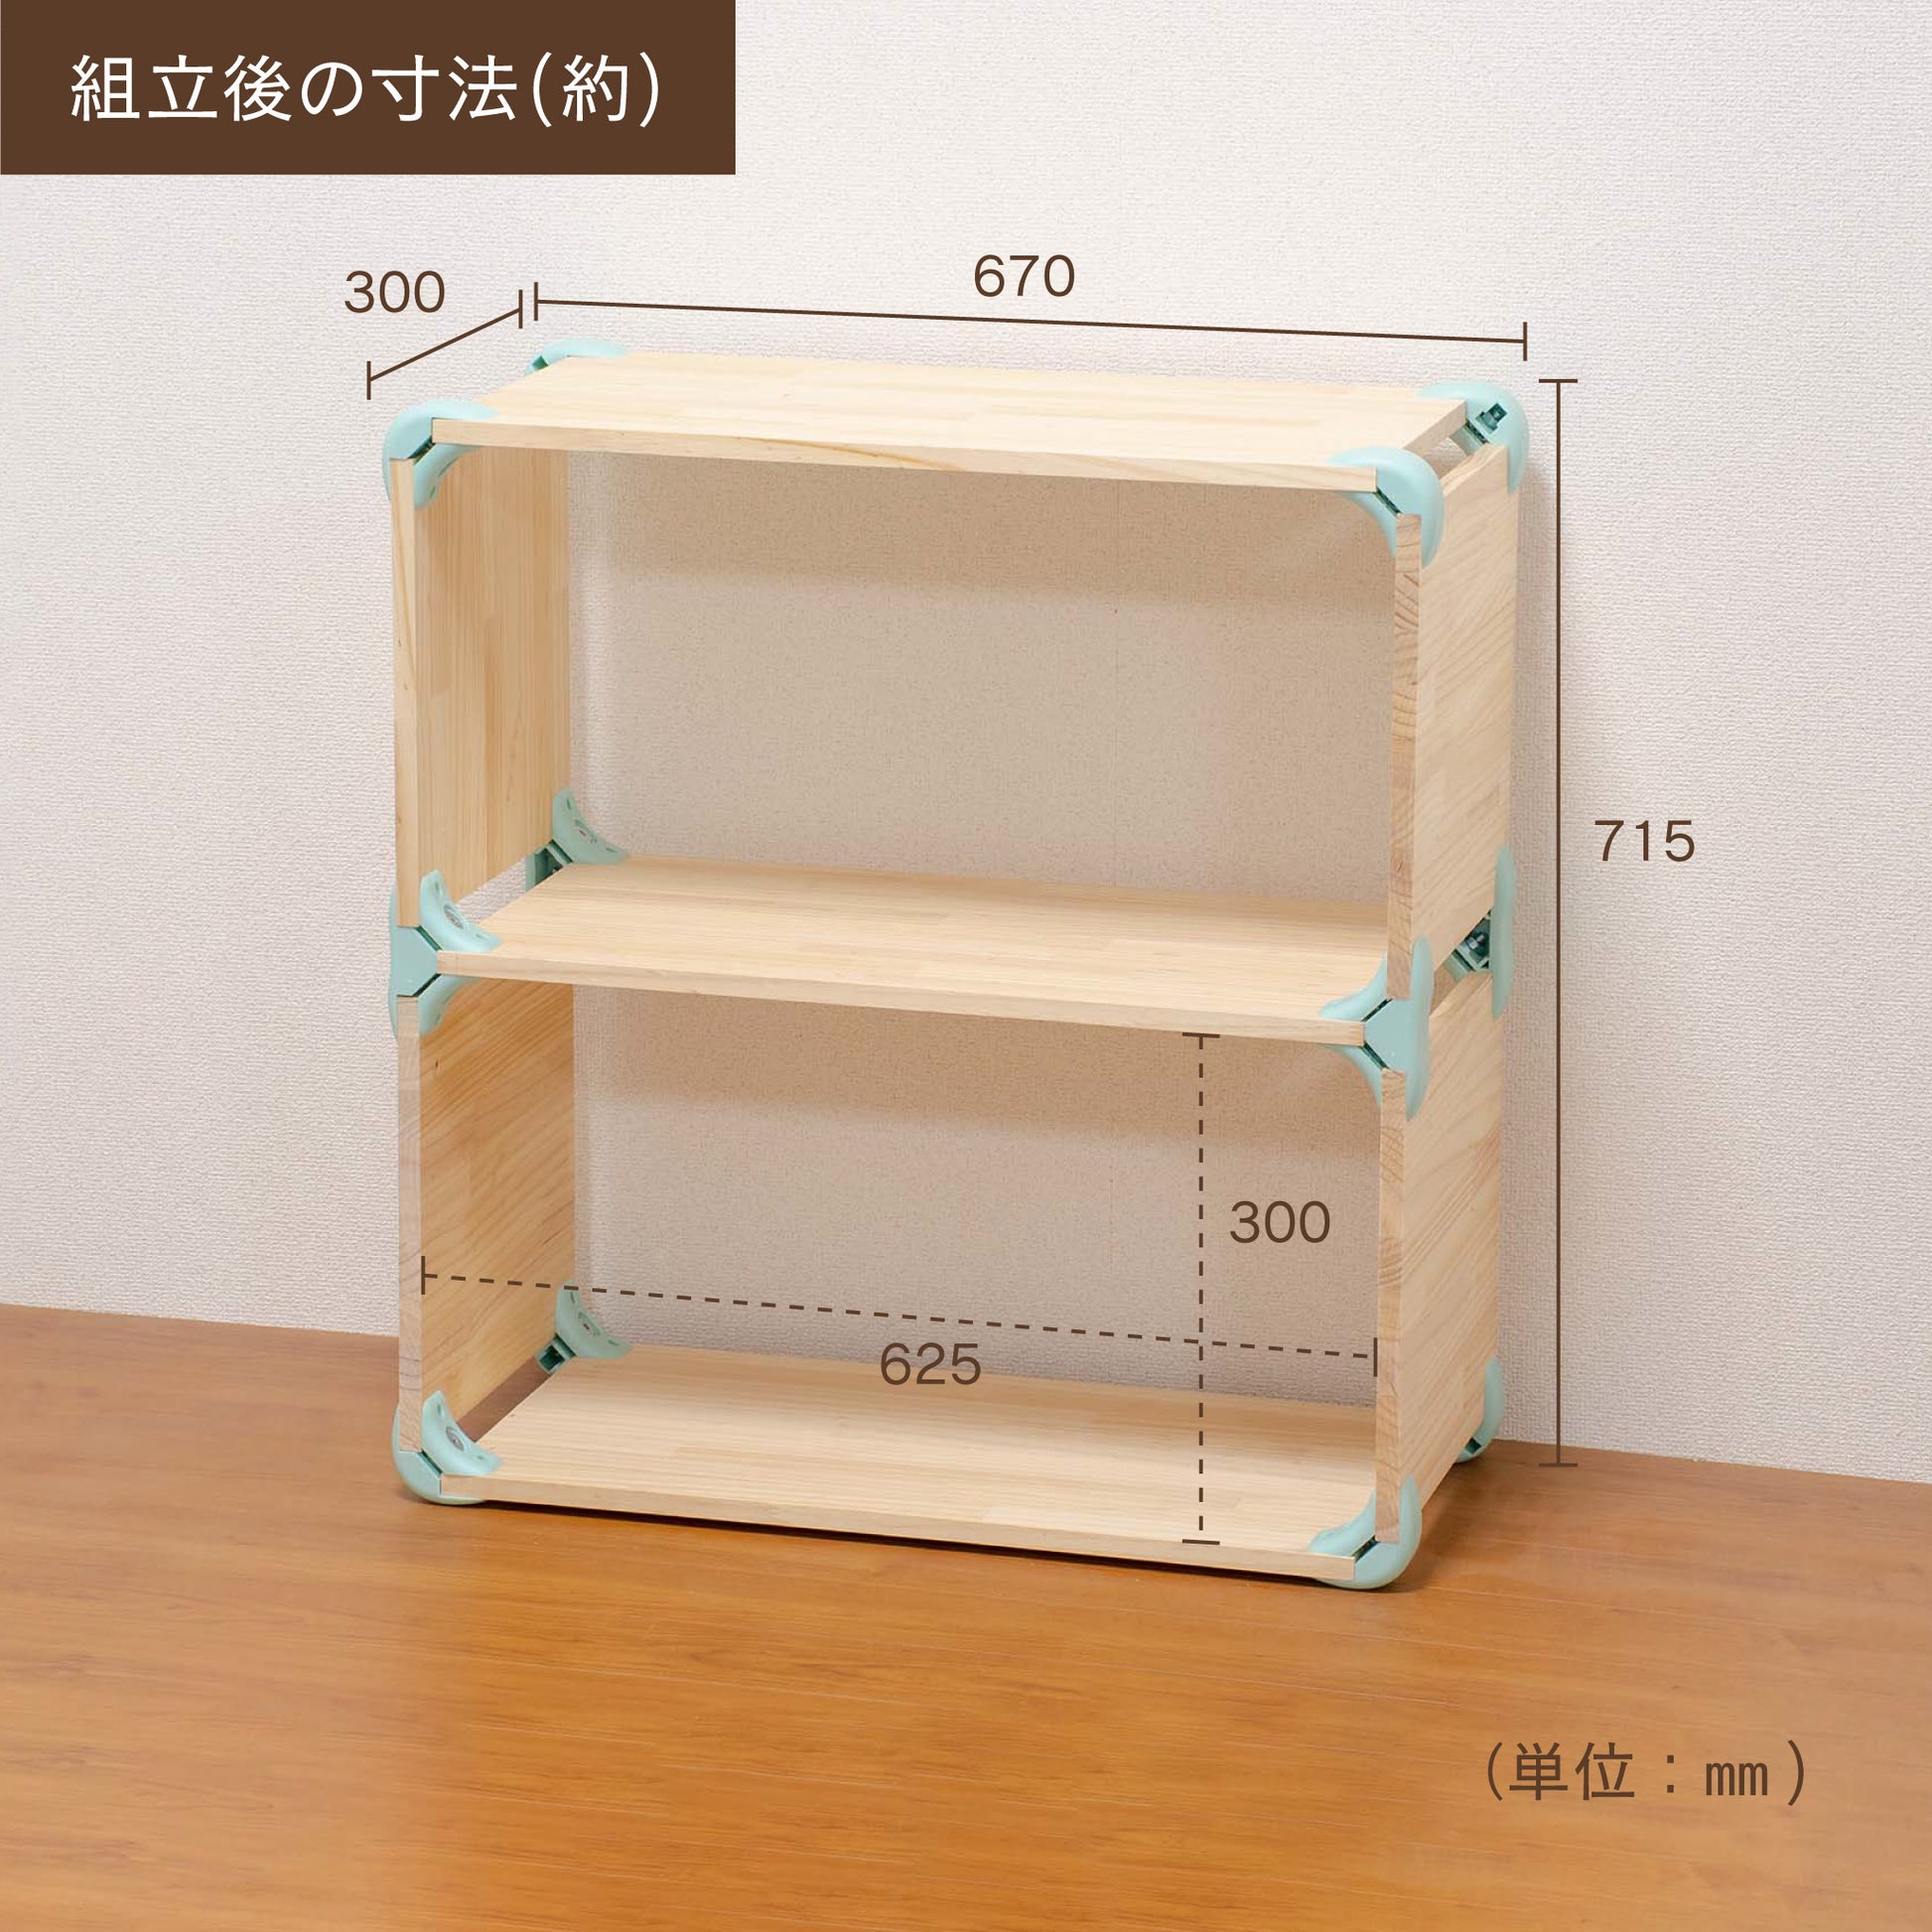 【送料無料】ハグブロック 2段ボックスM 木材セット｜【ハグブロック公式ショップ】はさんで固定するだけ簡単オリジナル家具が作れるアイテム。アウトドアにも